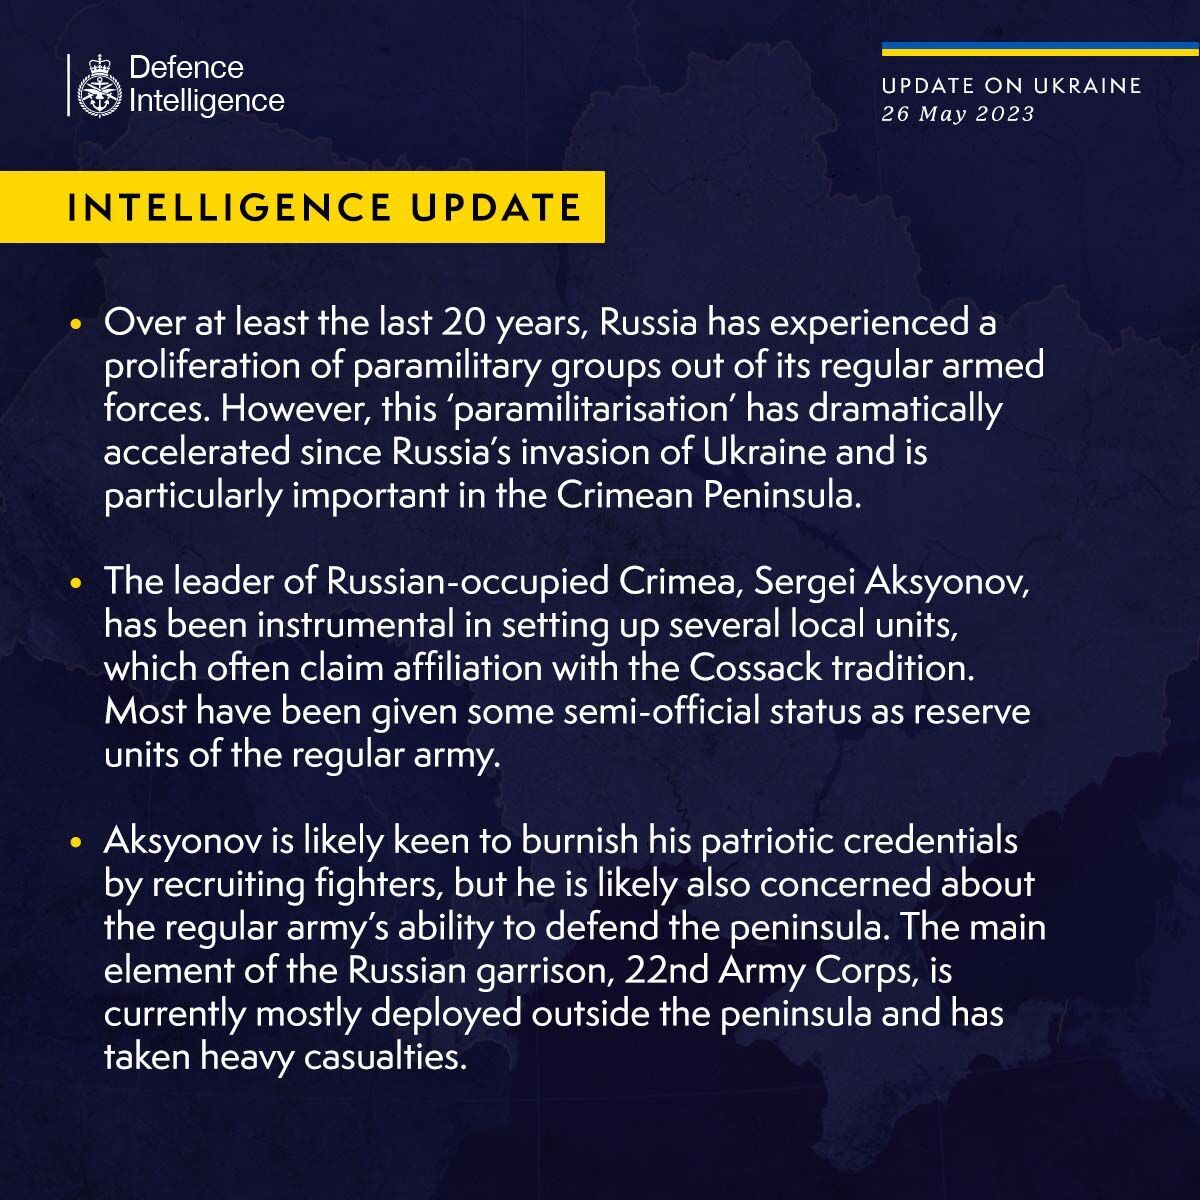 Дело не только в политических амбициях: разведка Британии объяснила, зачем Аксенову парамилитарные группировки в Крыму